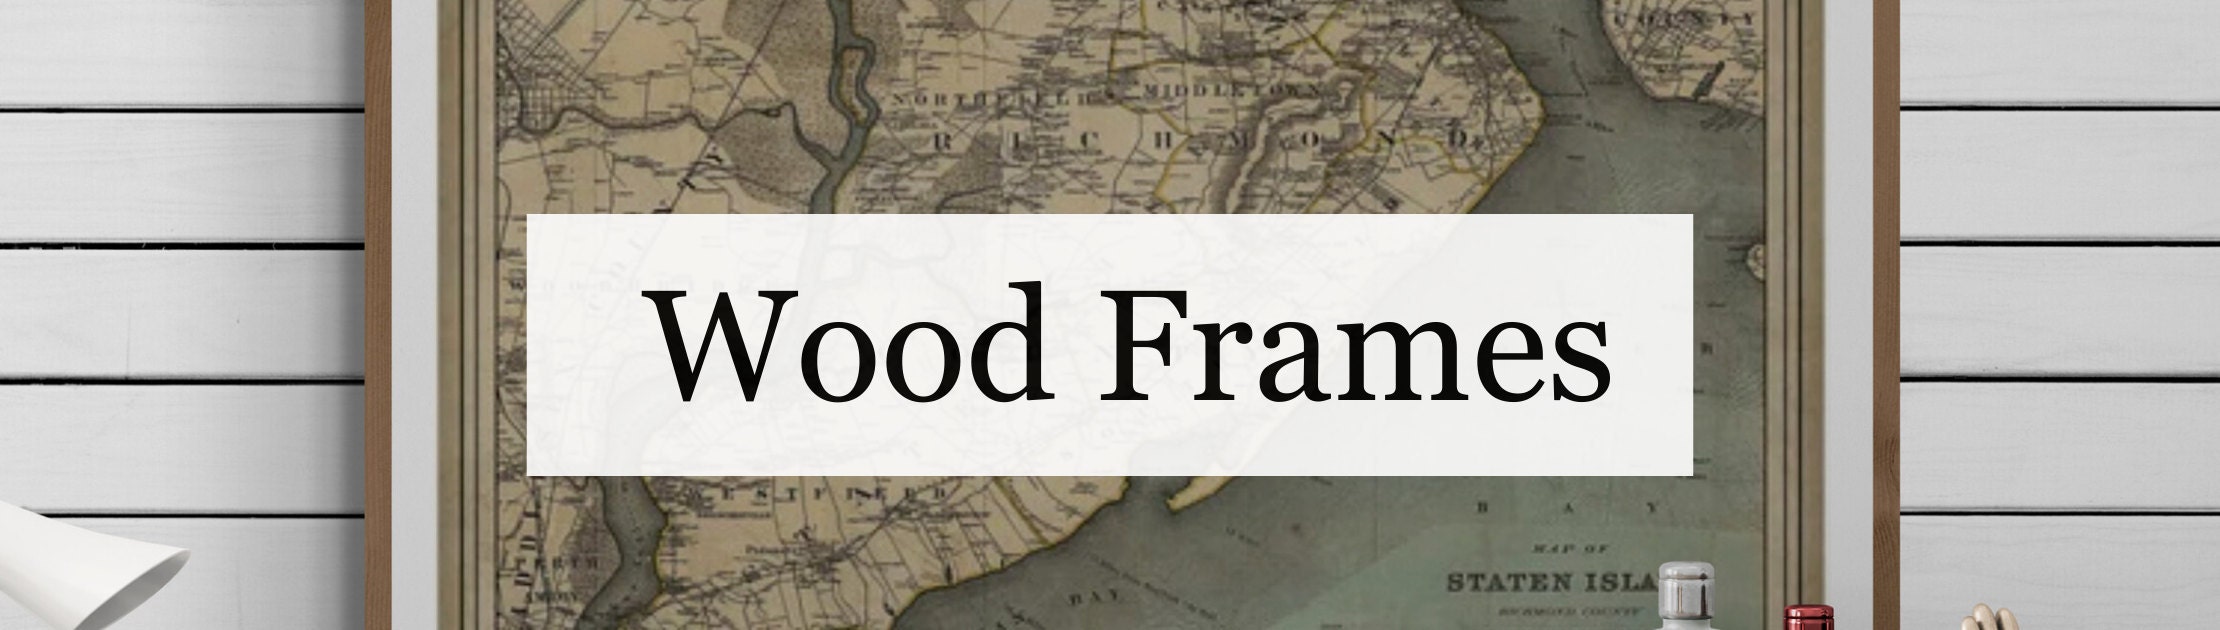 Wood Frames for Fine Art Prints